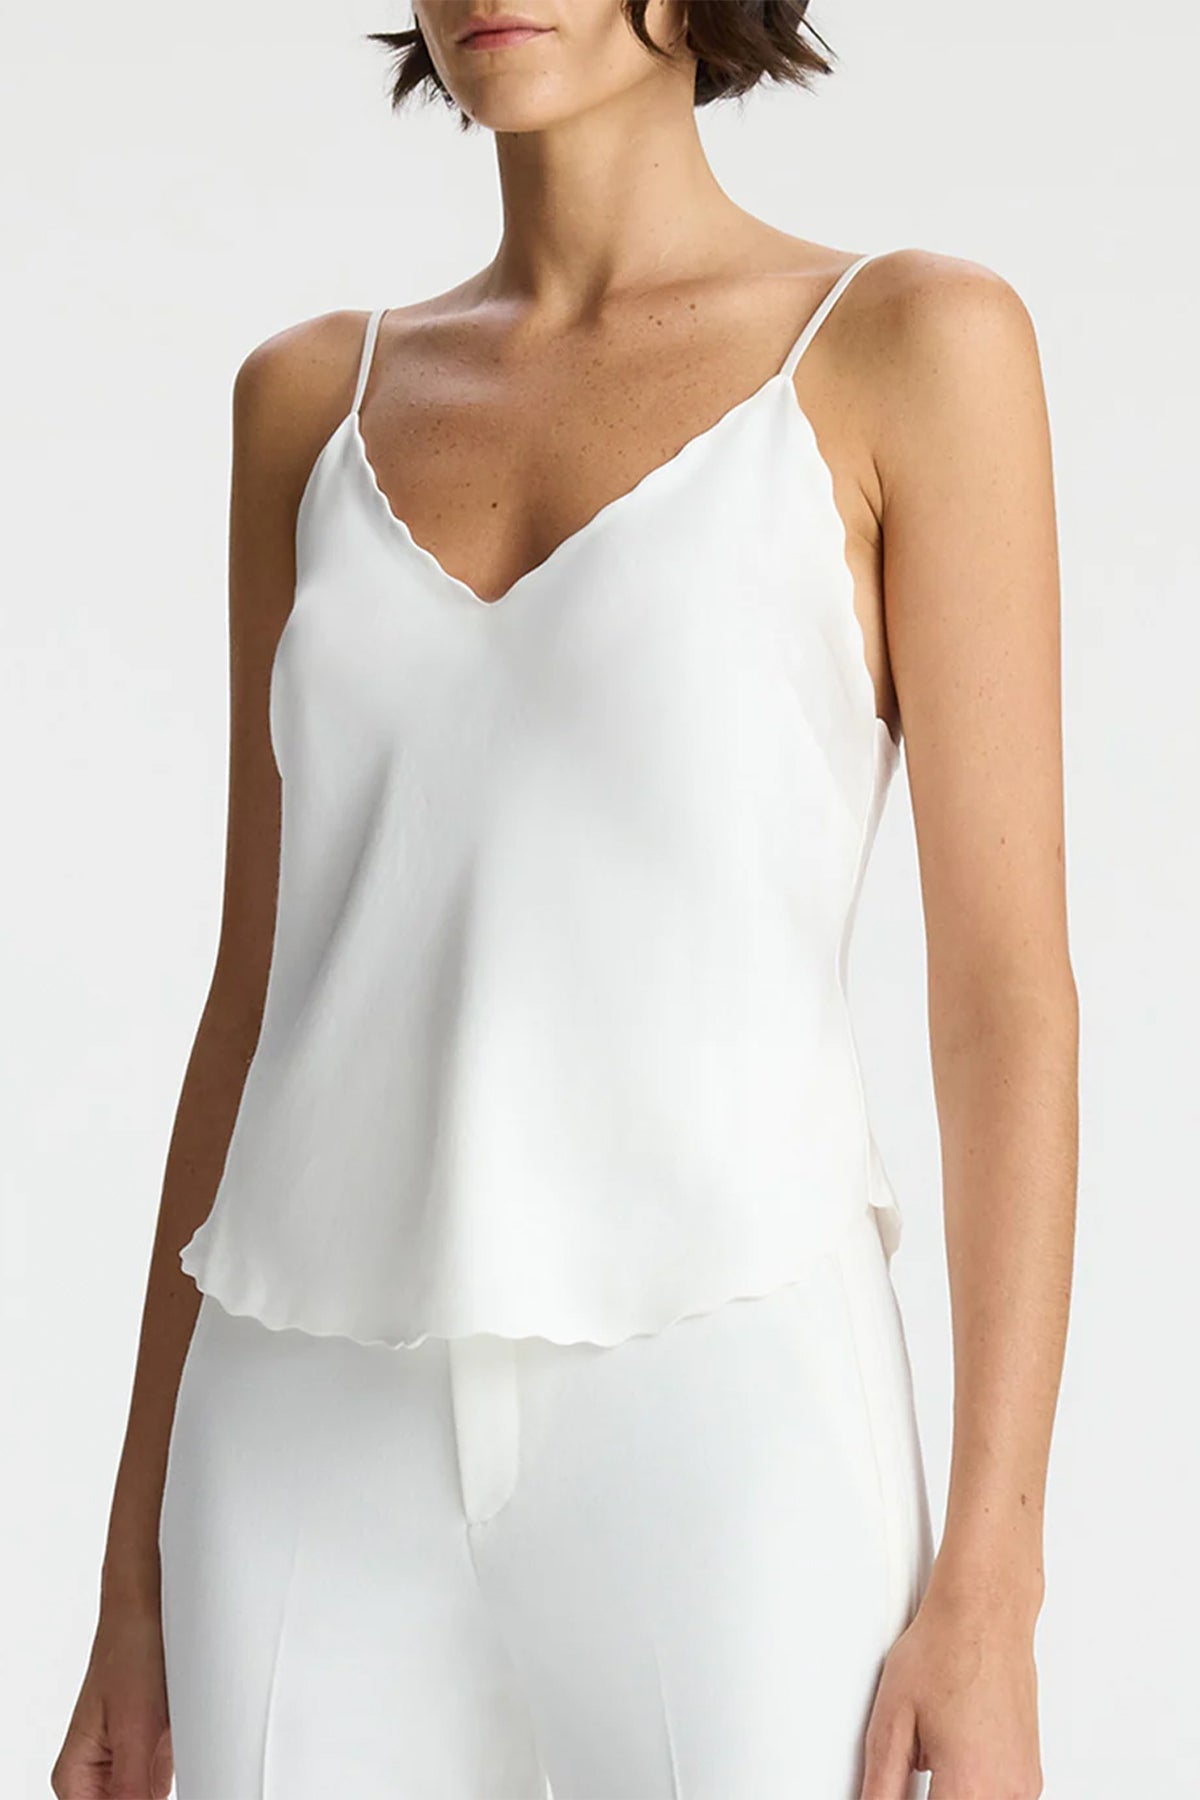 Malia Scalloped Camisole Top in White - shop-olivia.com